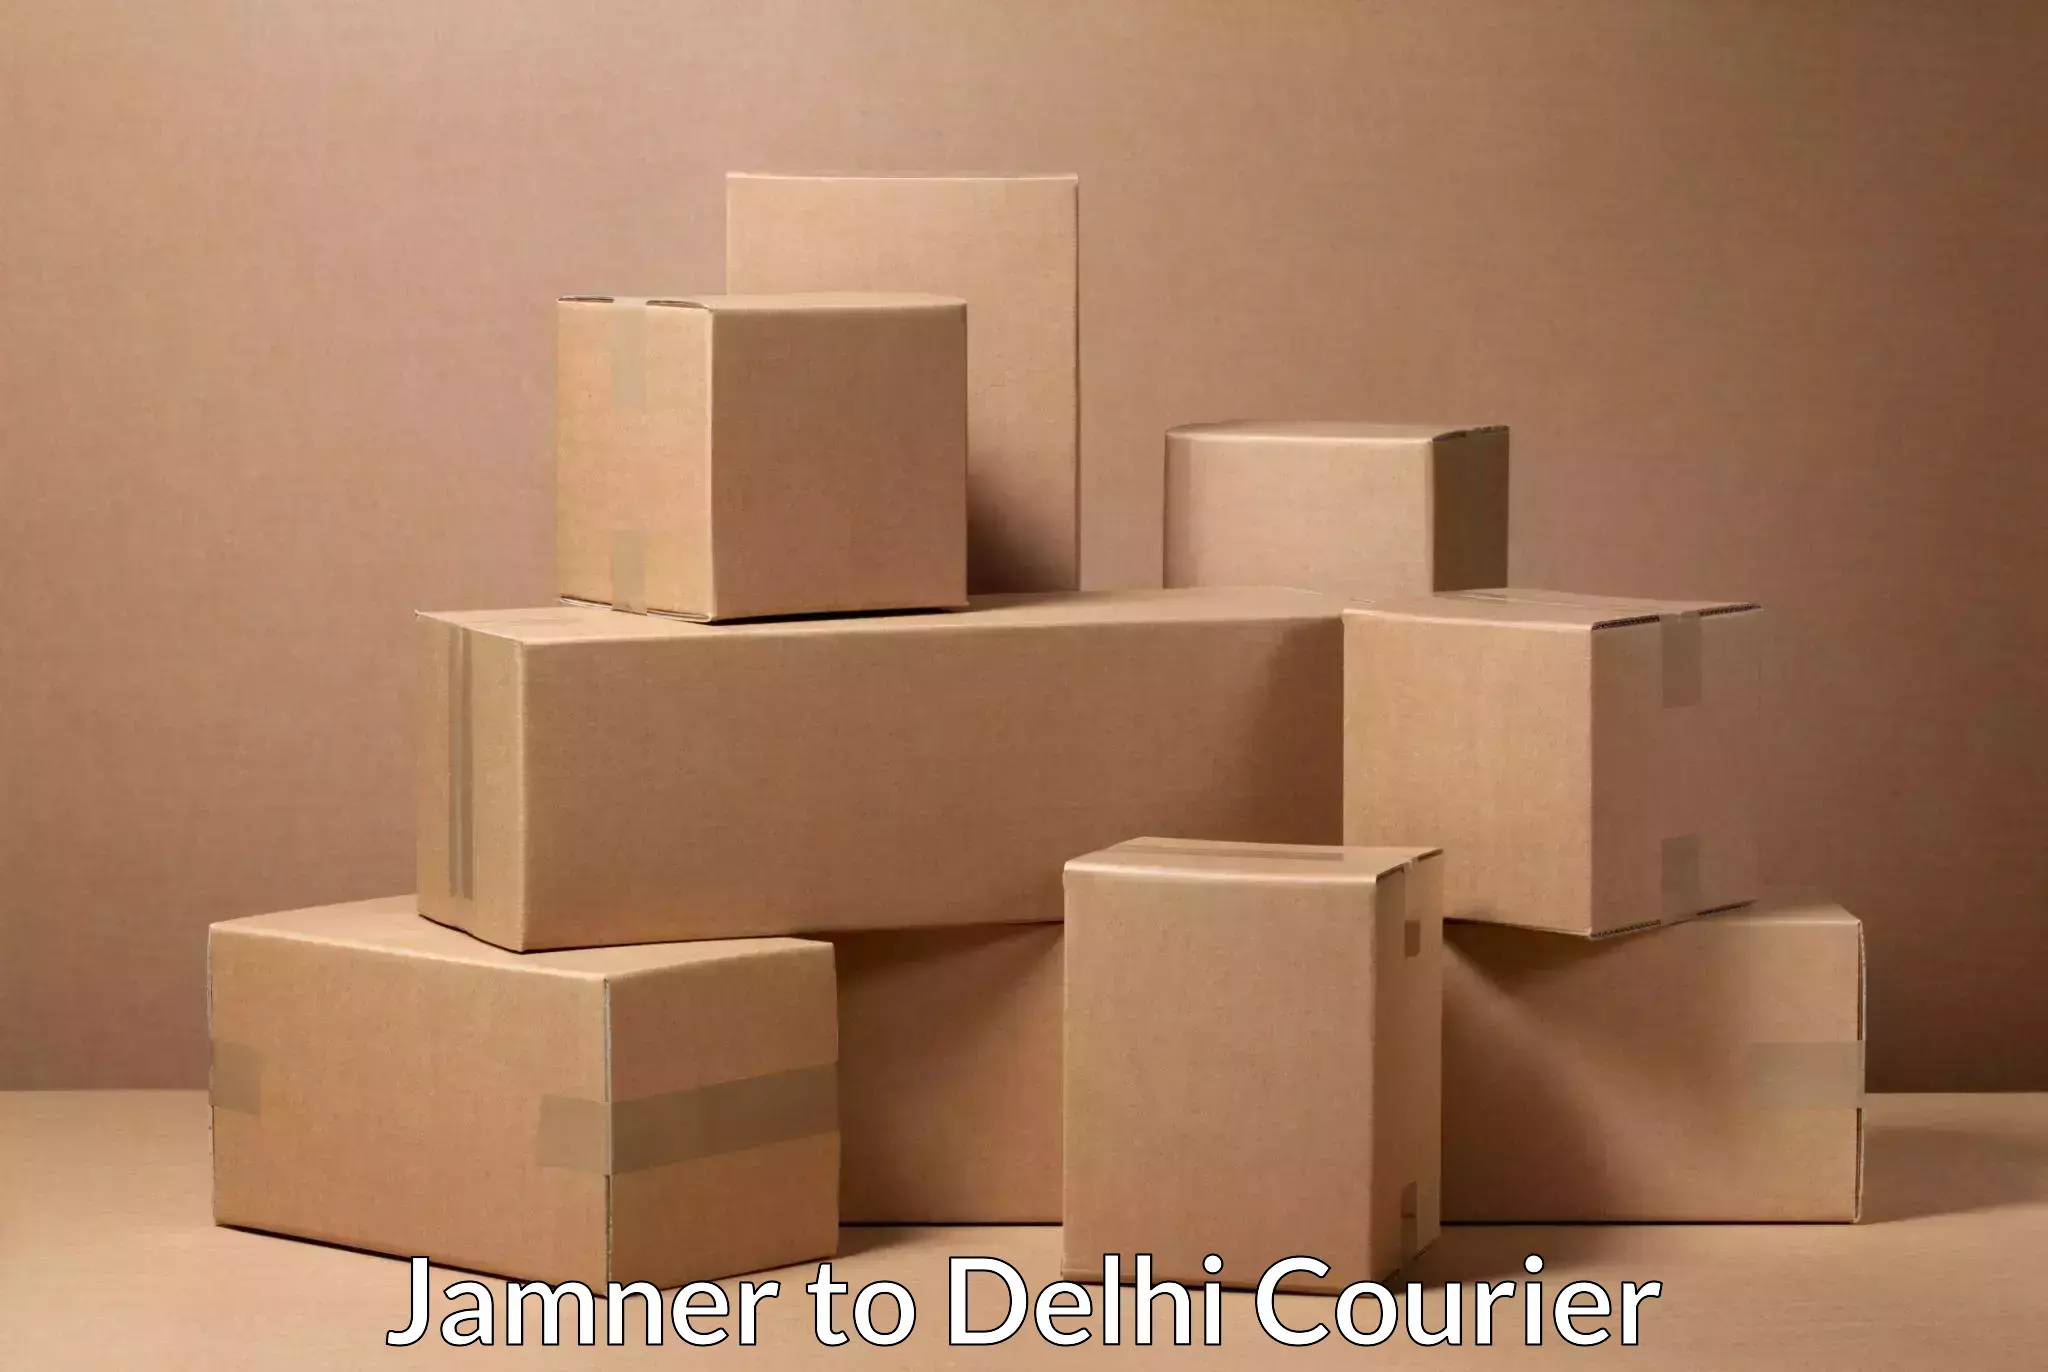 Express logistics providers Jamner to Delhi